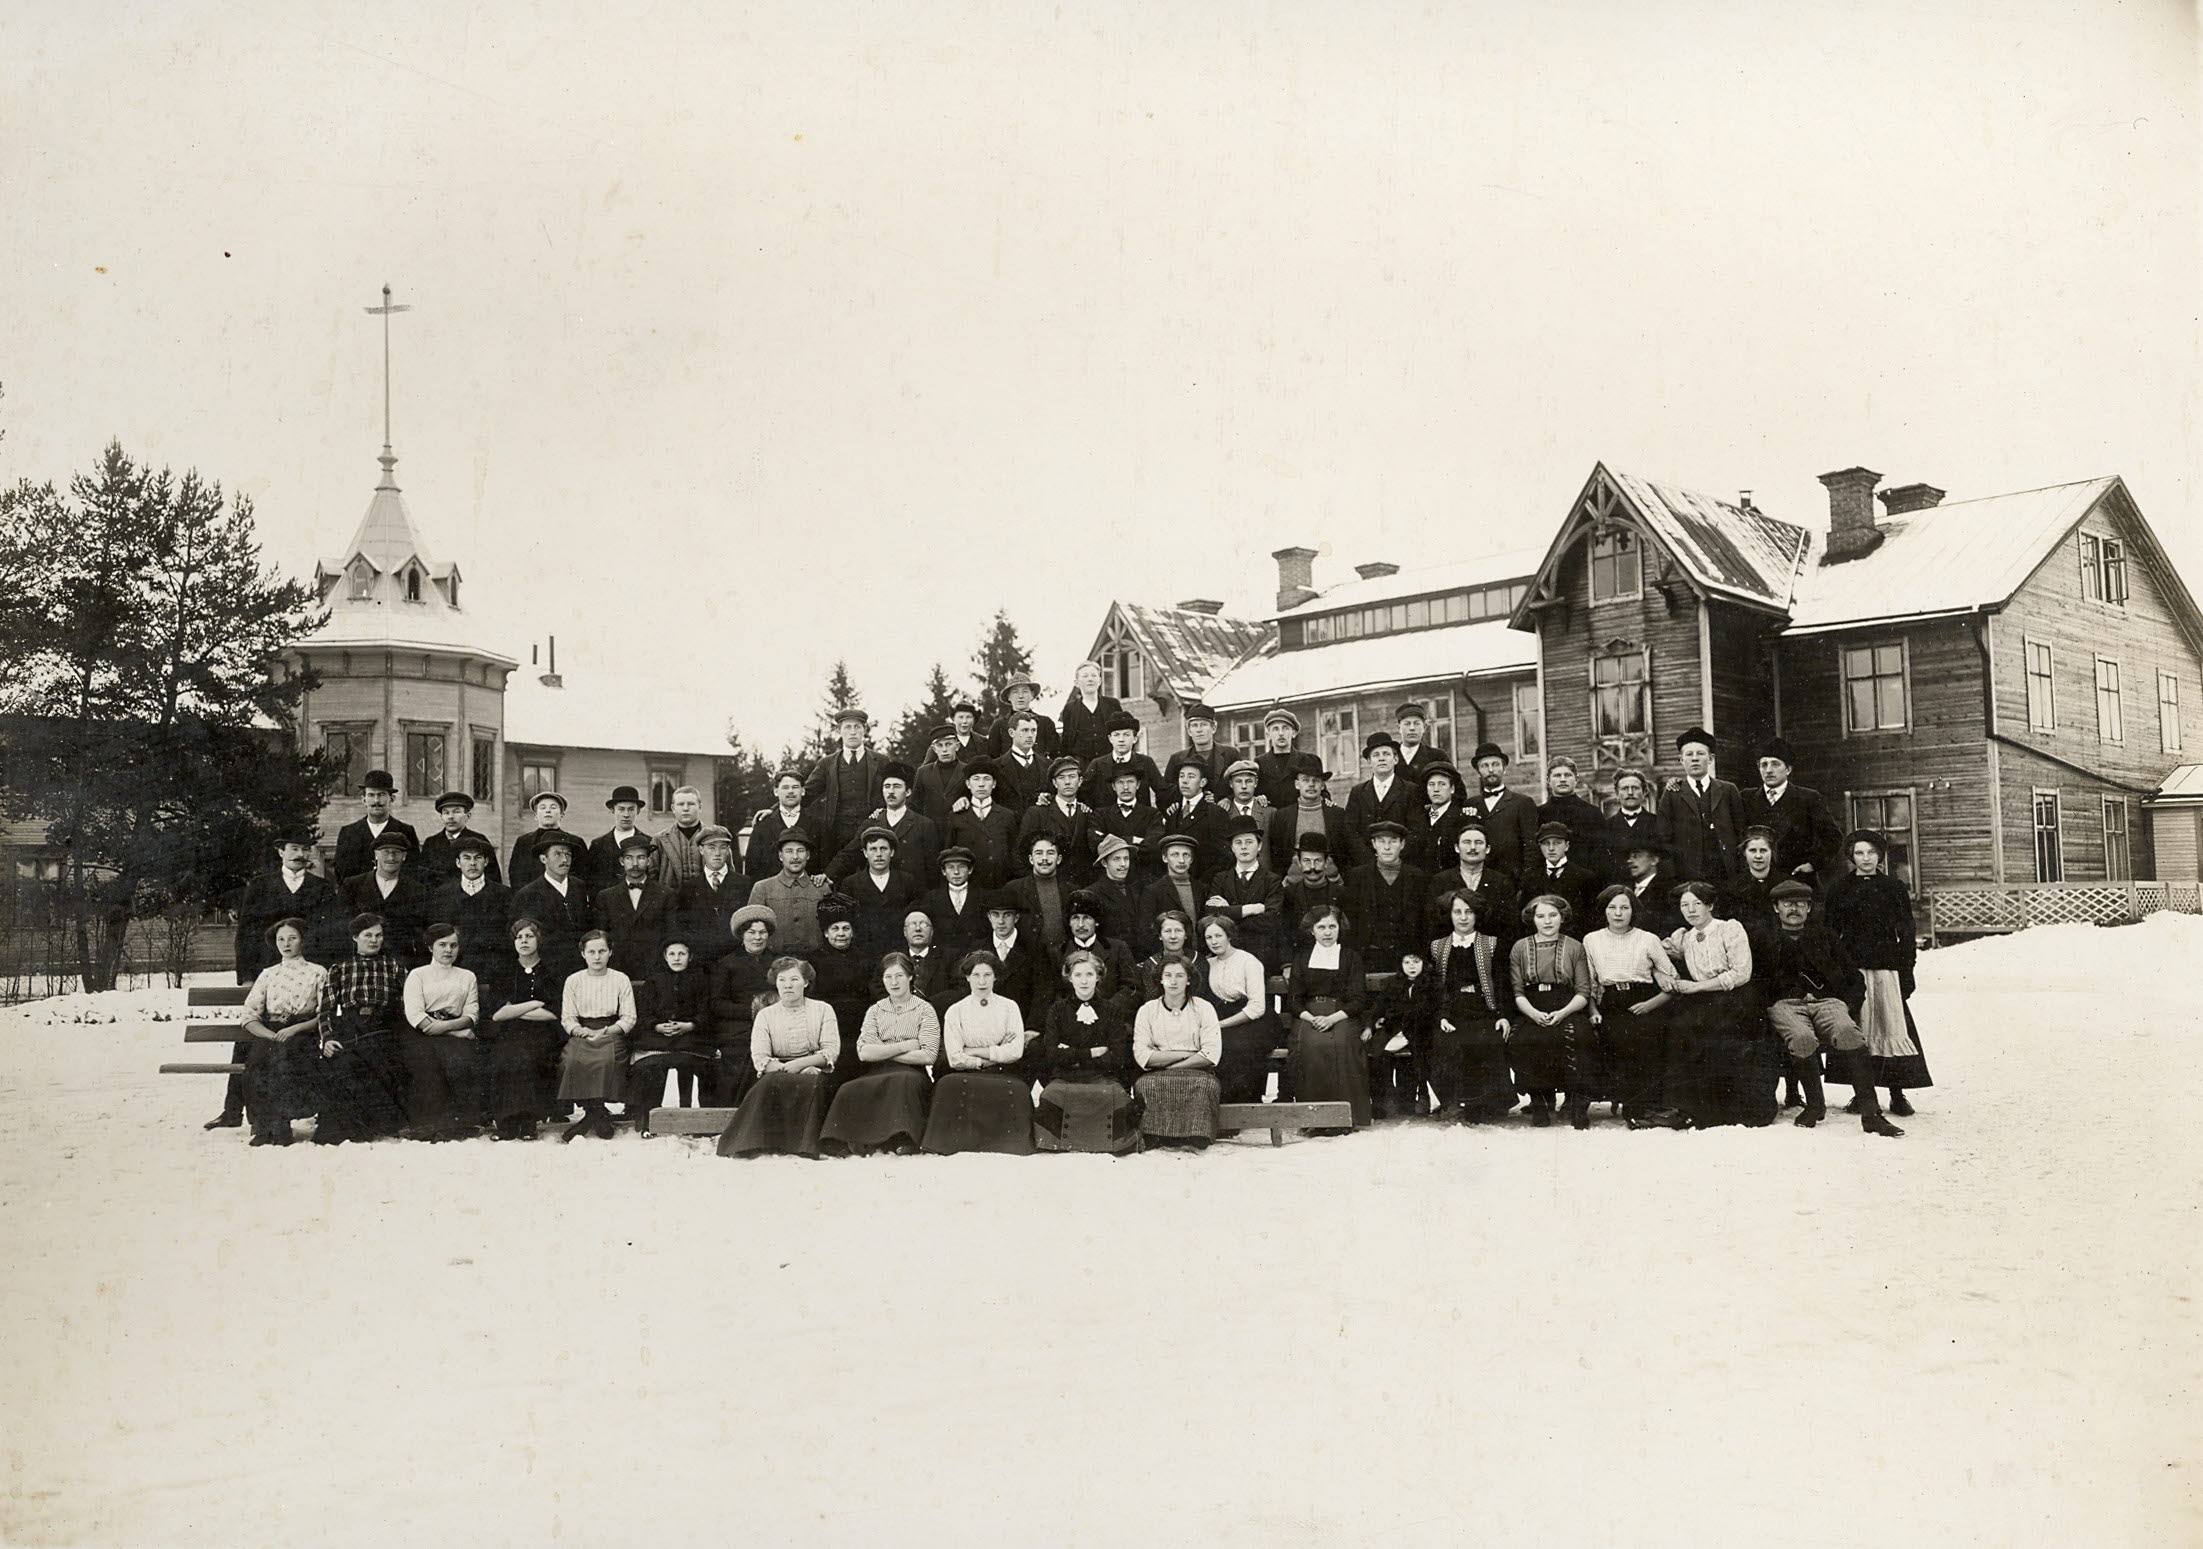 Elever i gammeldags kläder framför två träbyggnader i vintertid.